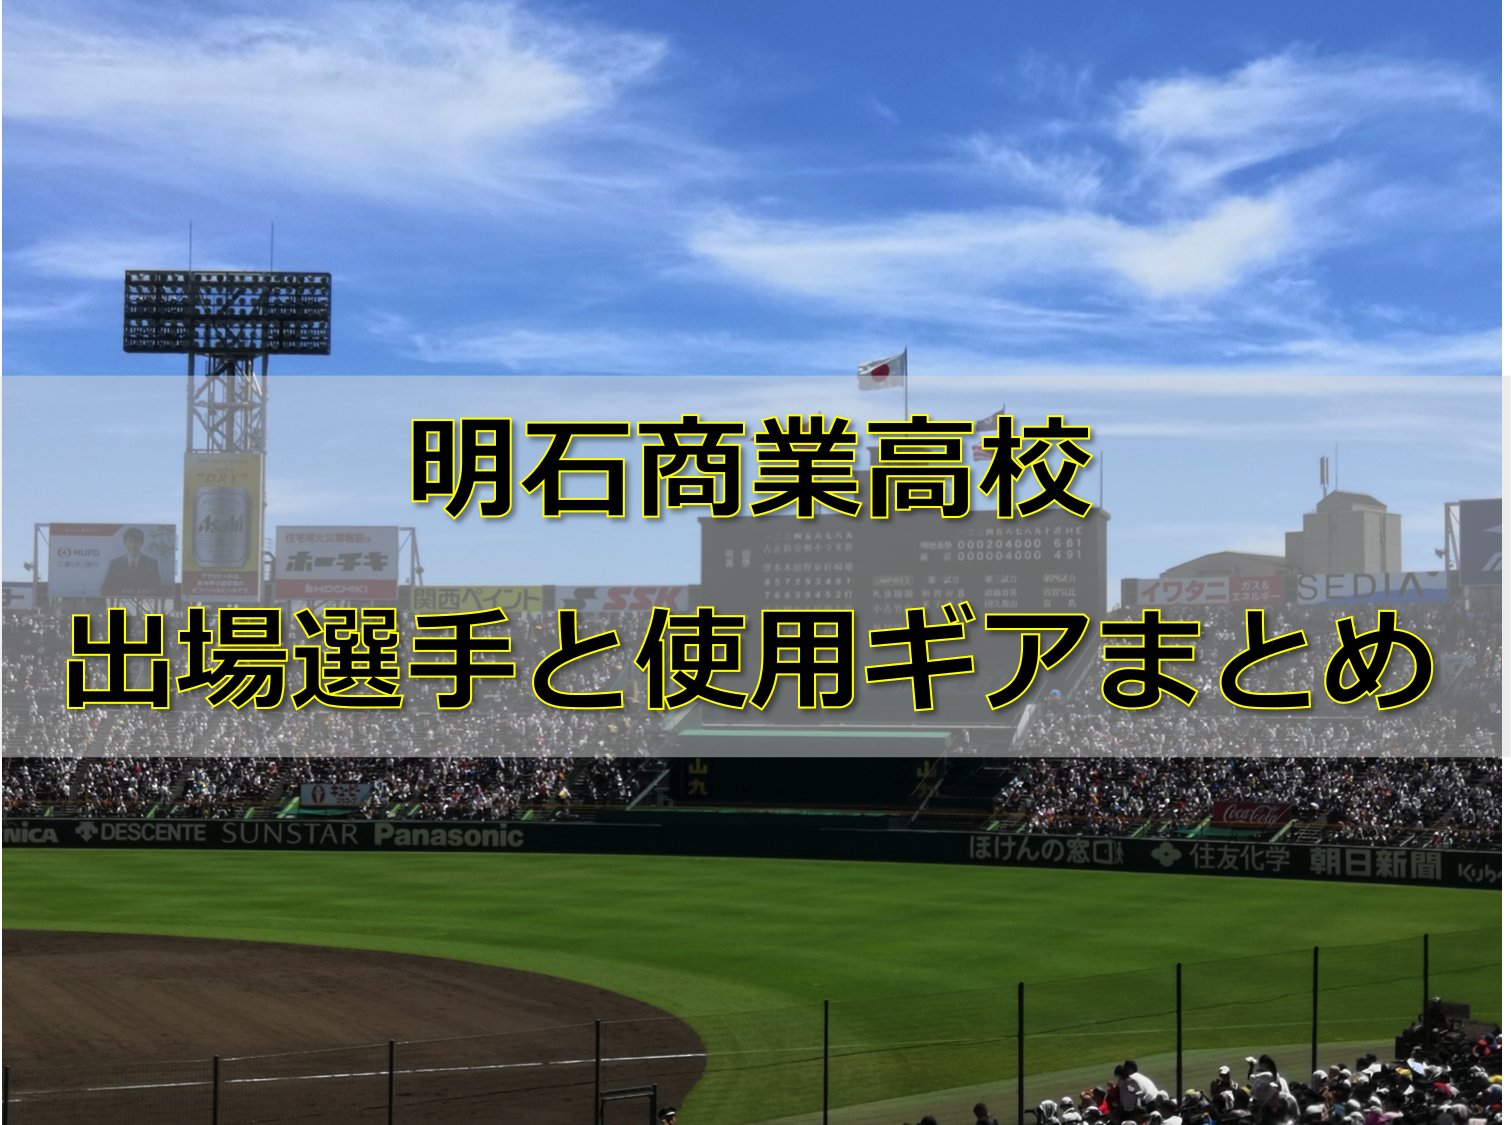 甲子園 明石商業高校ベンチ入りメンバーと野球道具まとめ 19年夏 バックネット裏から見る野球